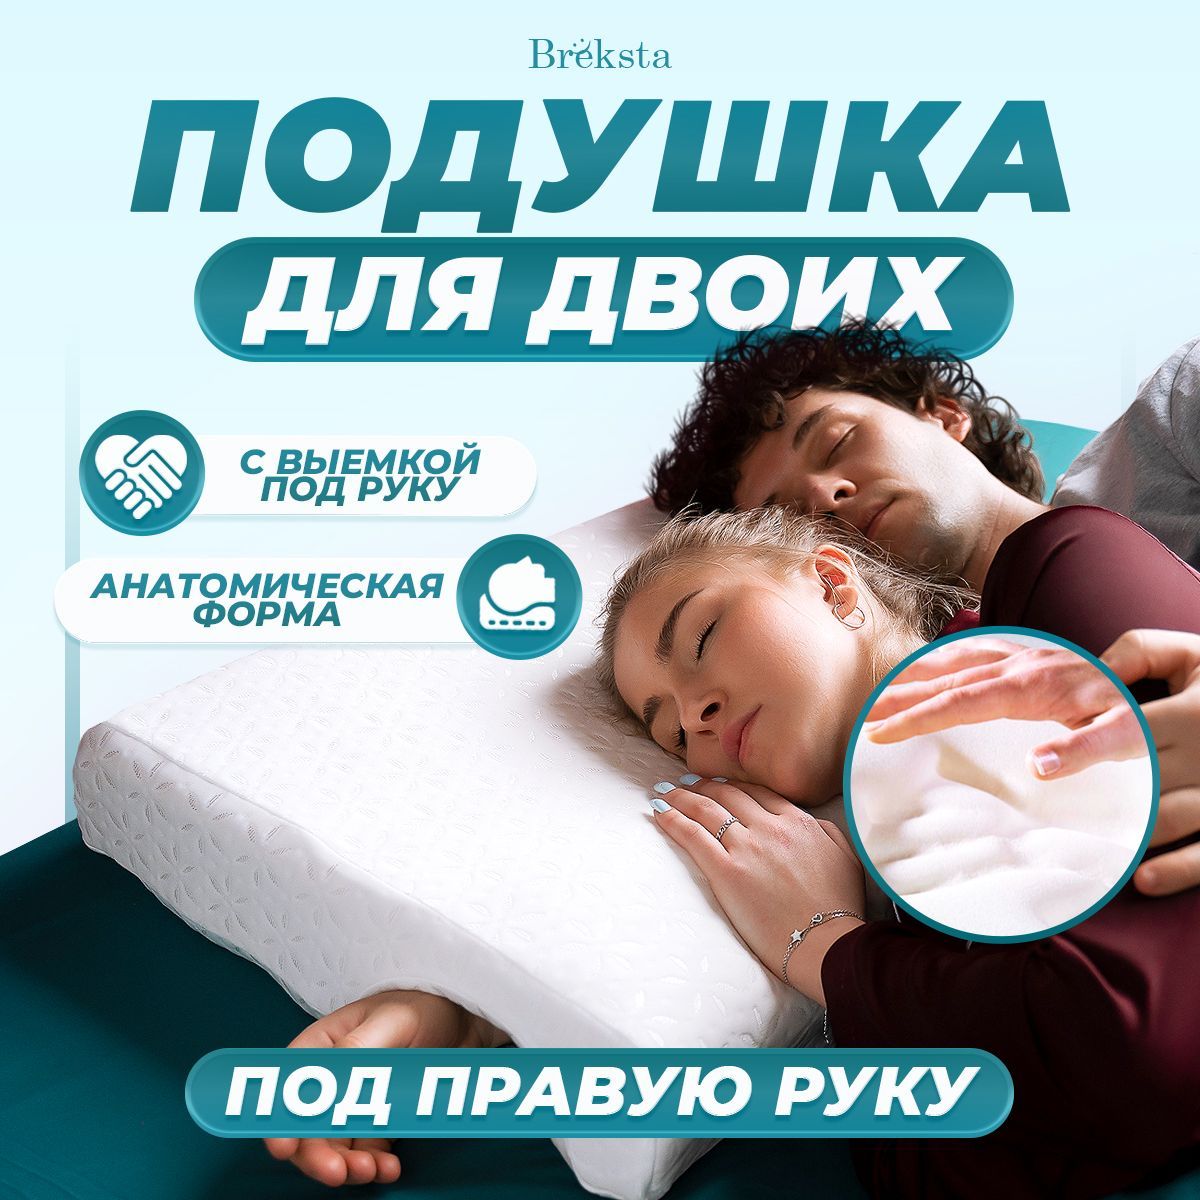 Ортопедические подушки для комфортного положения тела в кровати | Забота маркет